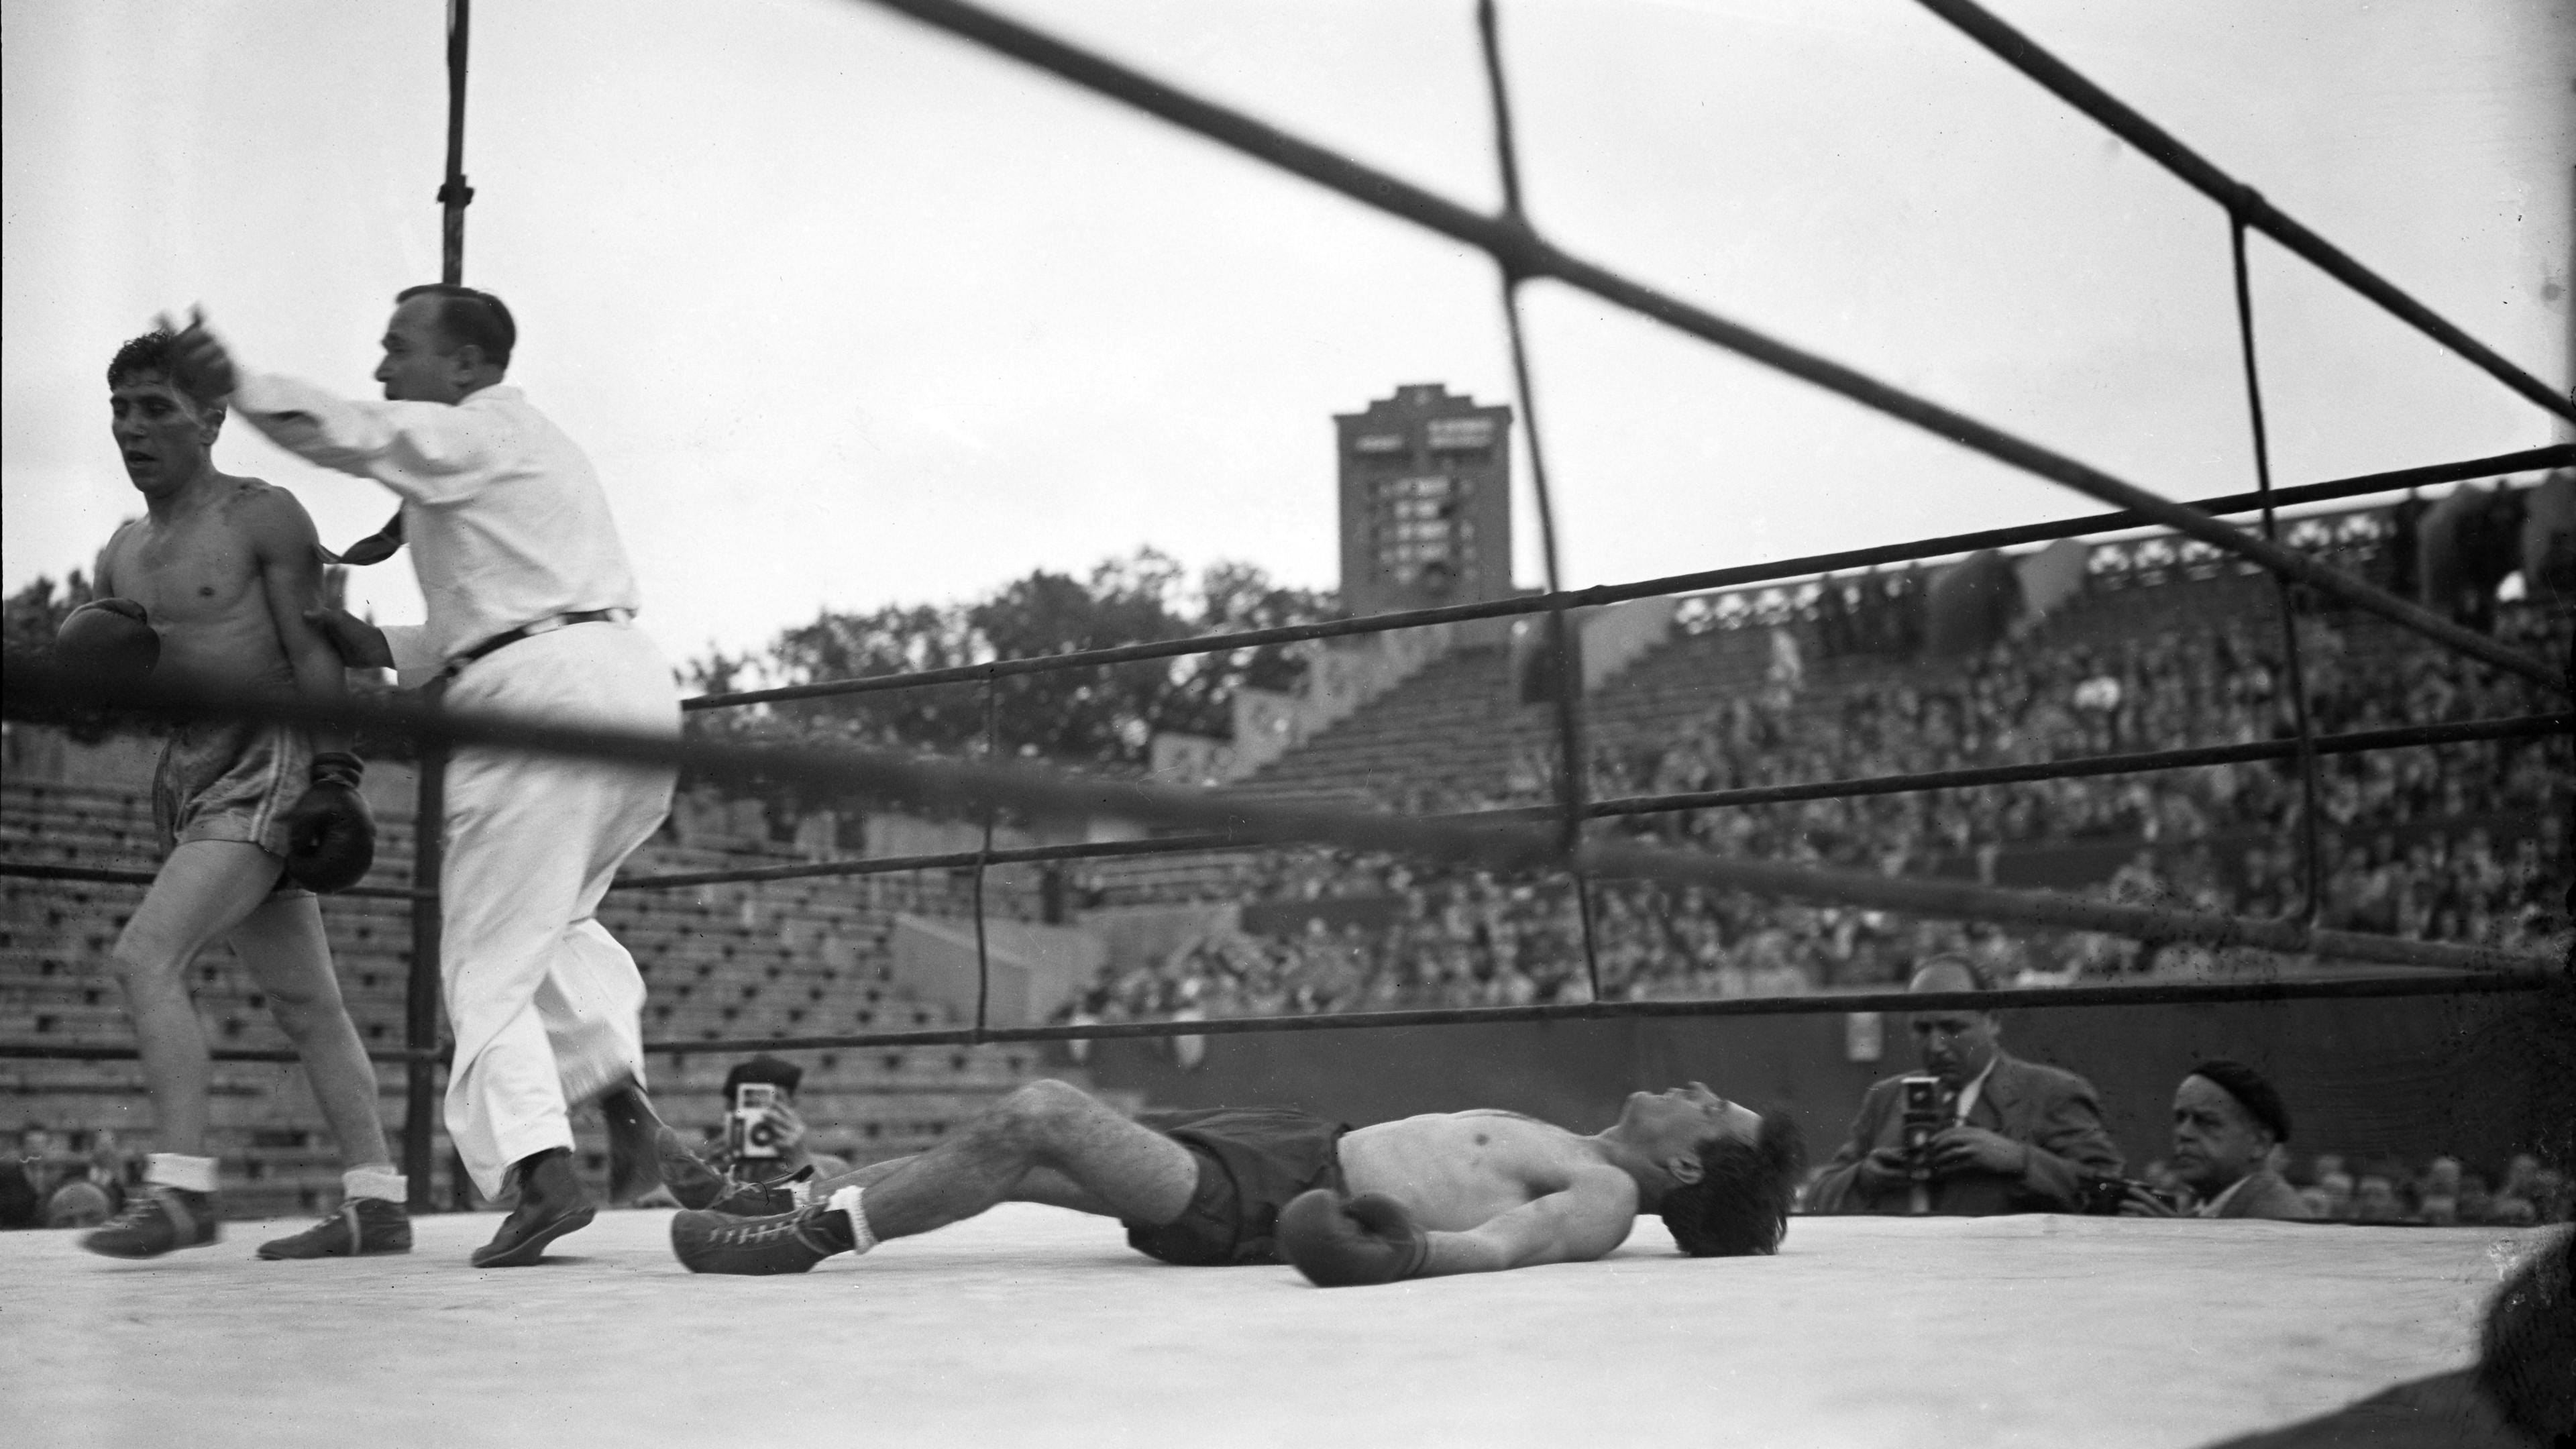 La réunion de boxe de 1947.